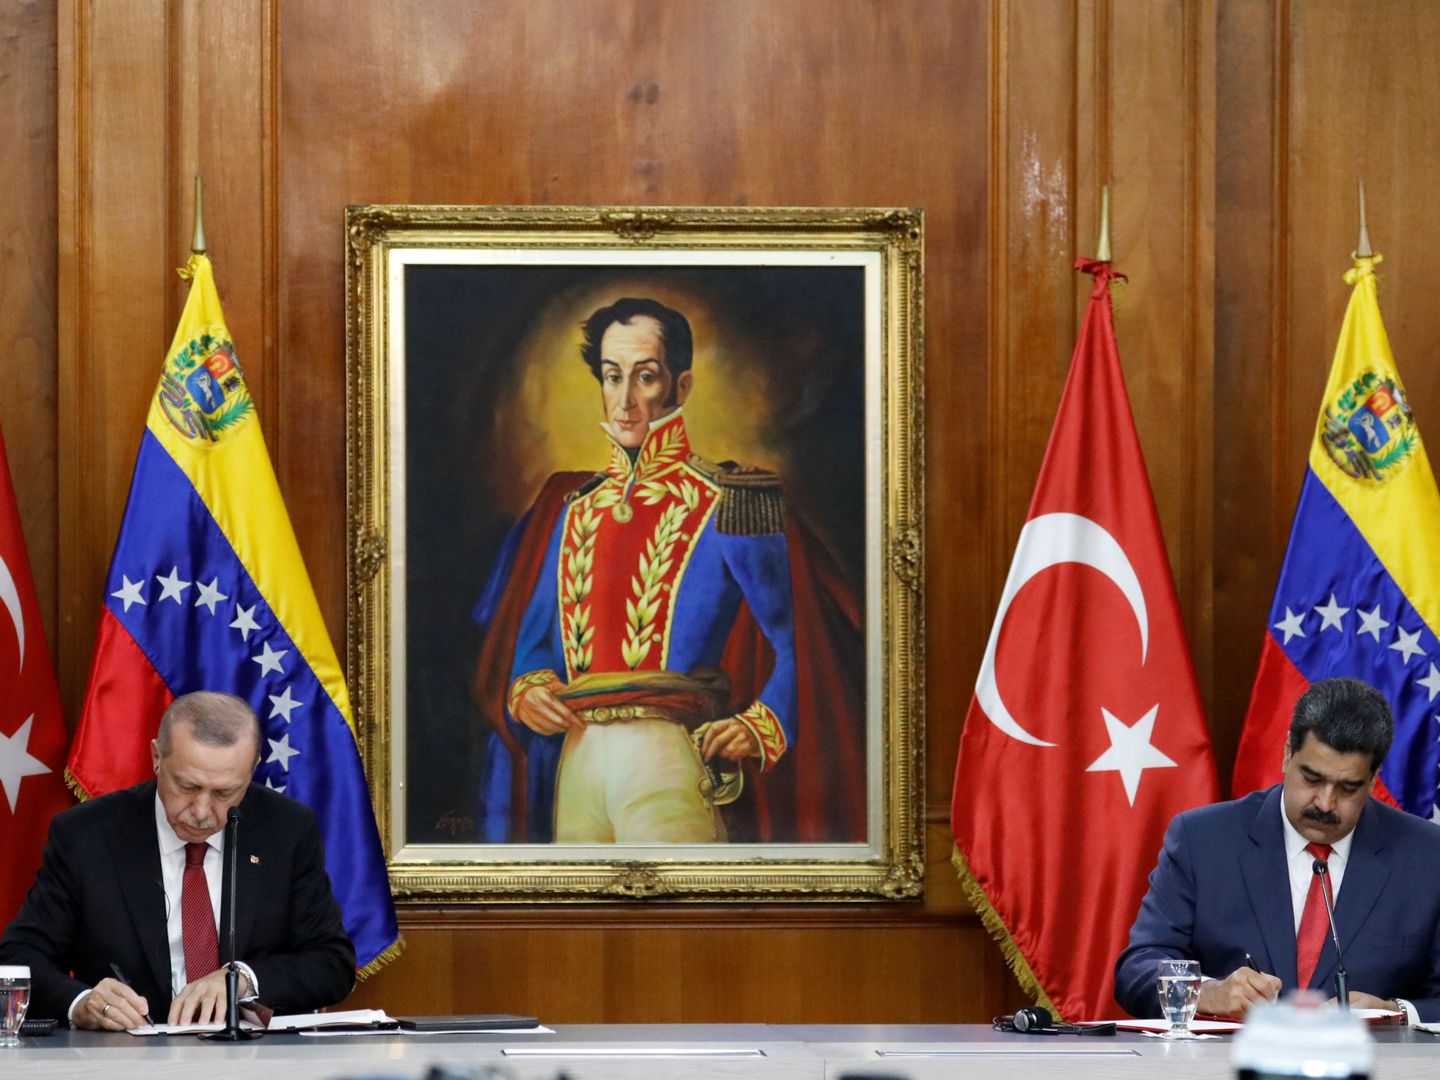 El presidente turco Recep Tayyip Erdogan y el venezolano Nicolás Maduro firman una serie de acuerdos en Caracas, Venezuela, el 3 de diciembre de 2018. (Reuters)